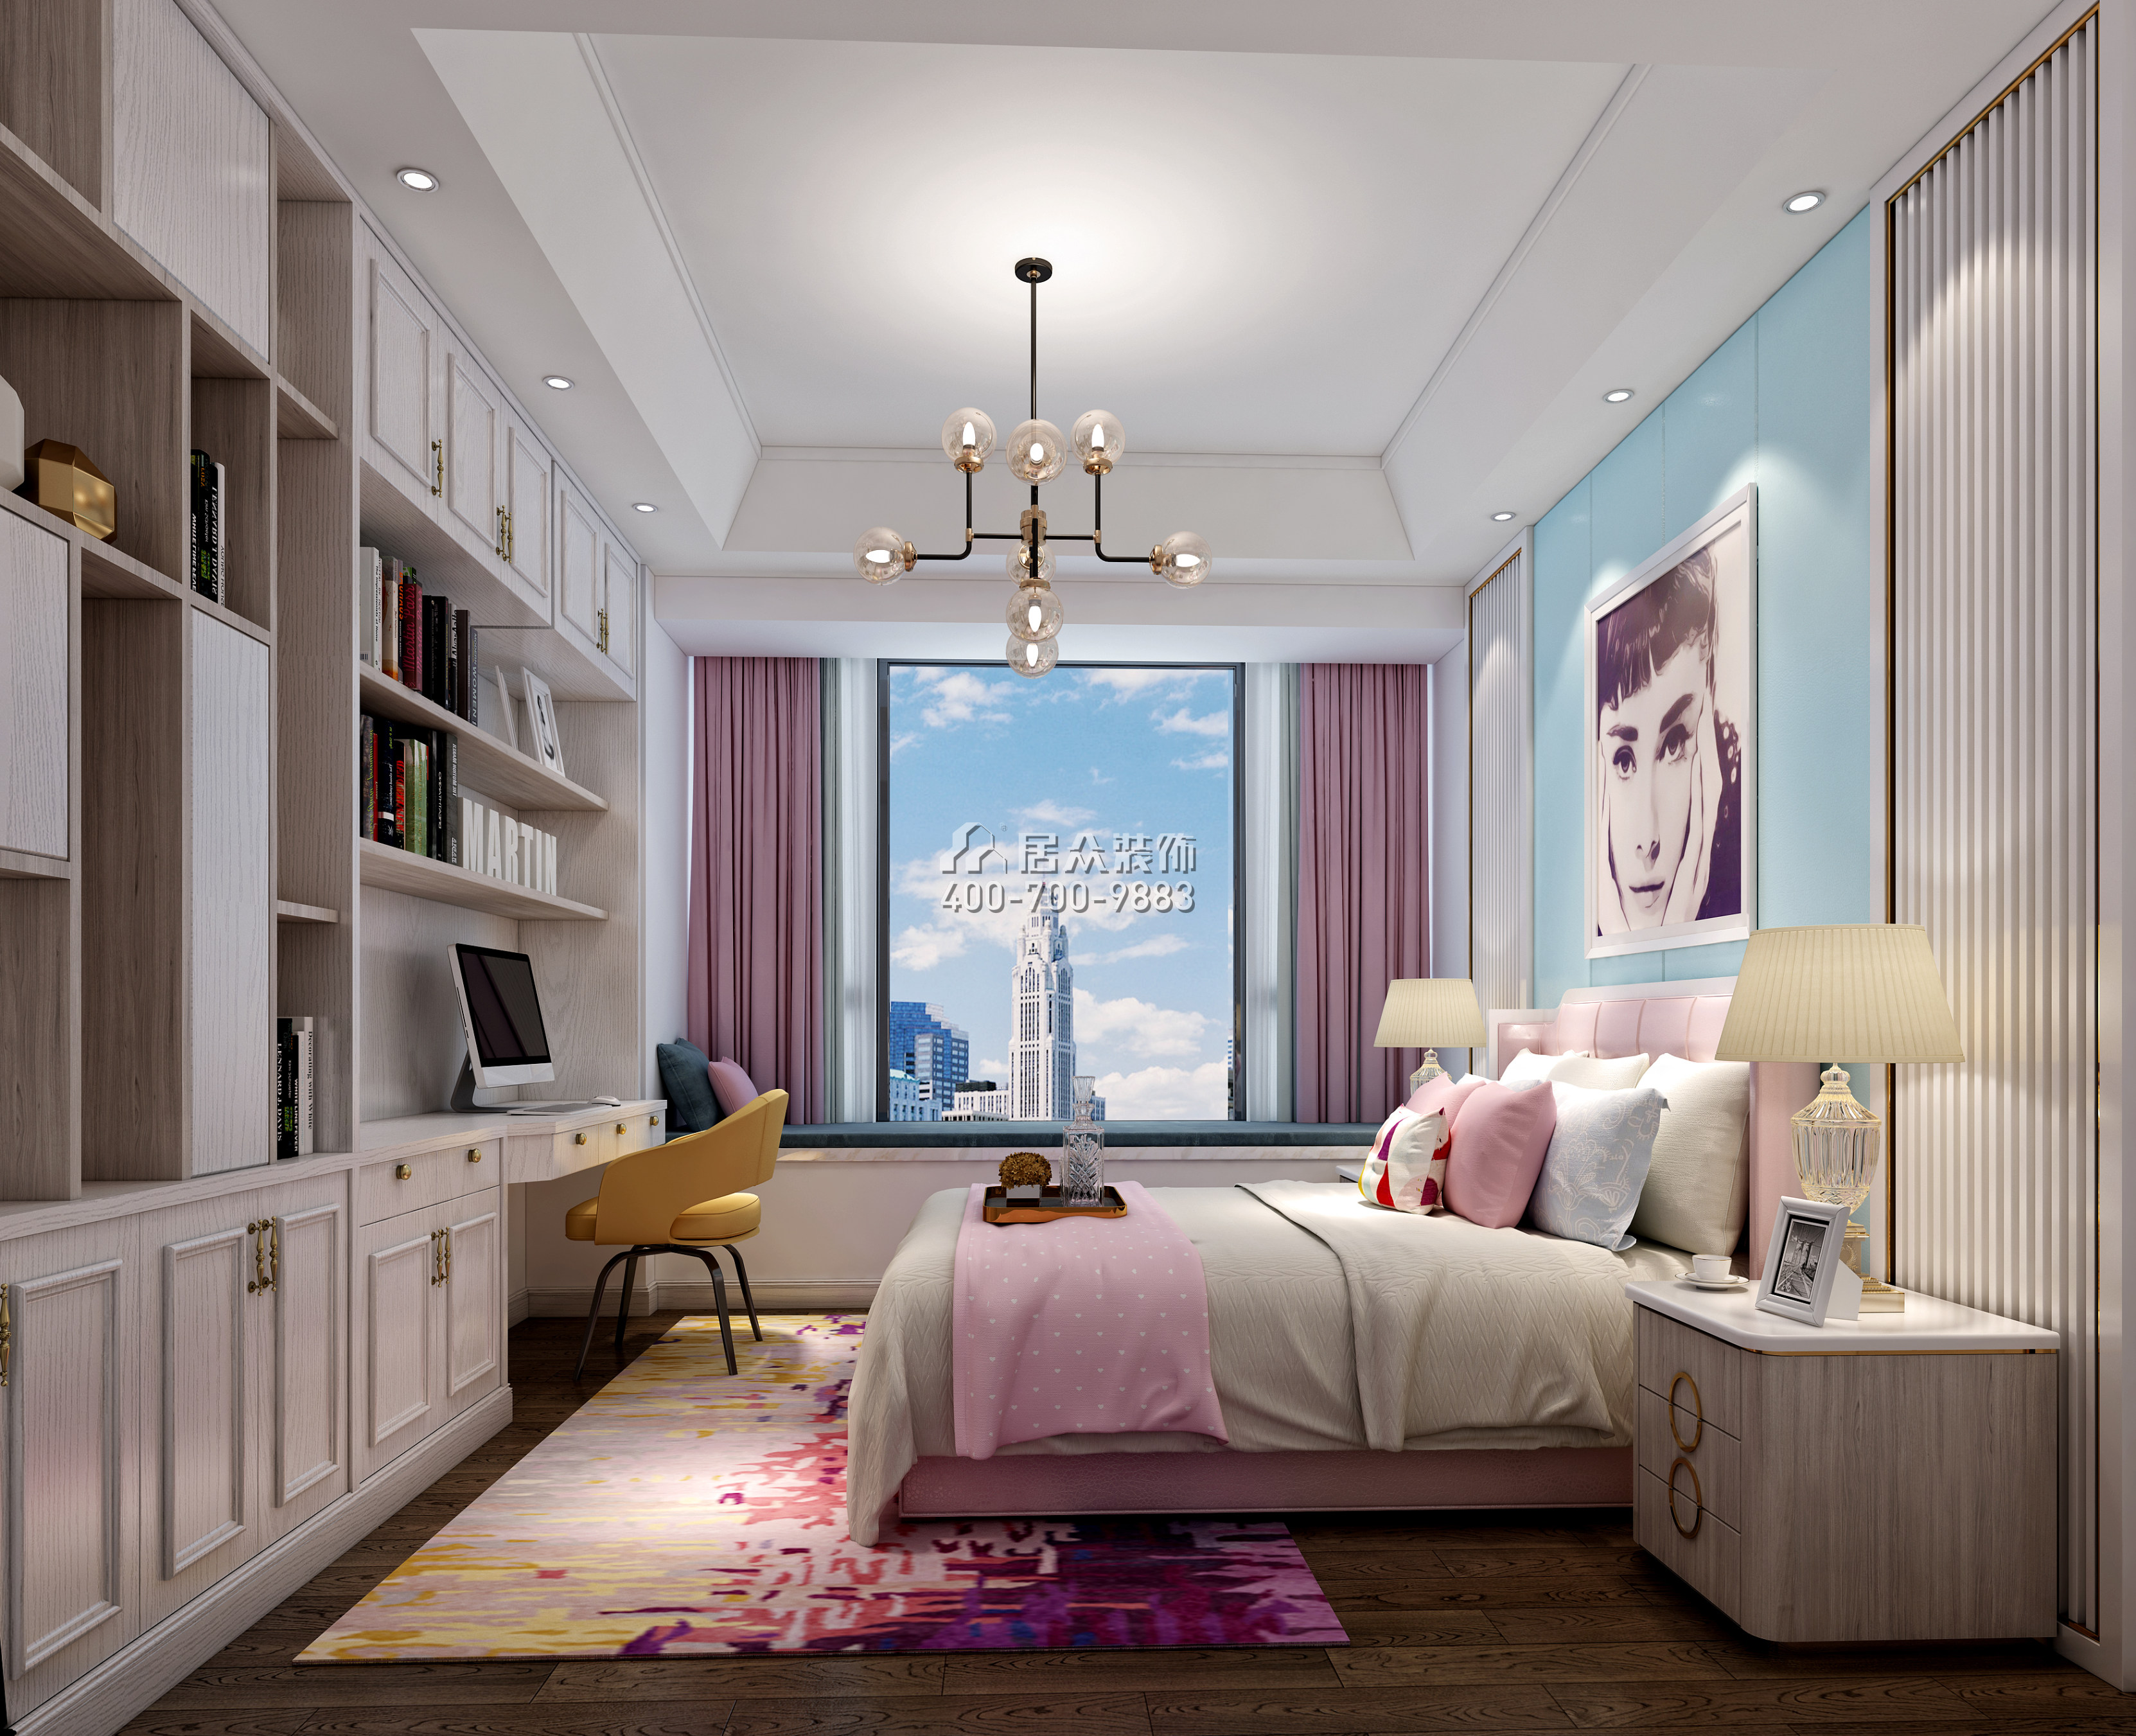 錦繡山河200平方米歐式風格平層戶型臥室裝修效果圖